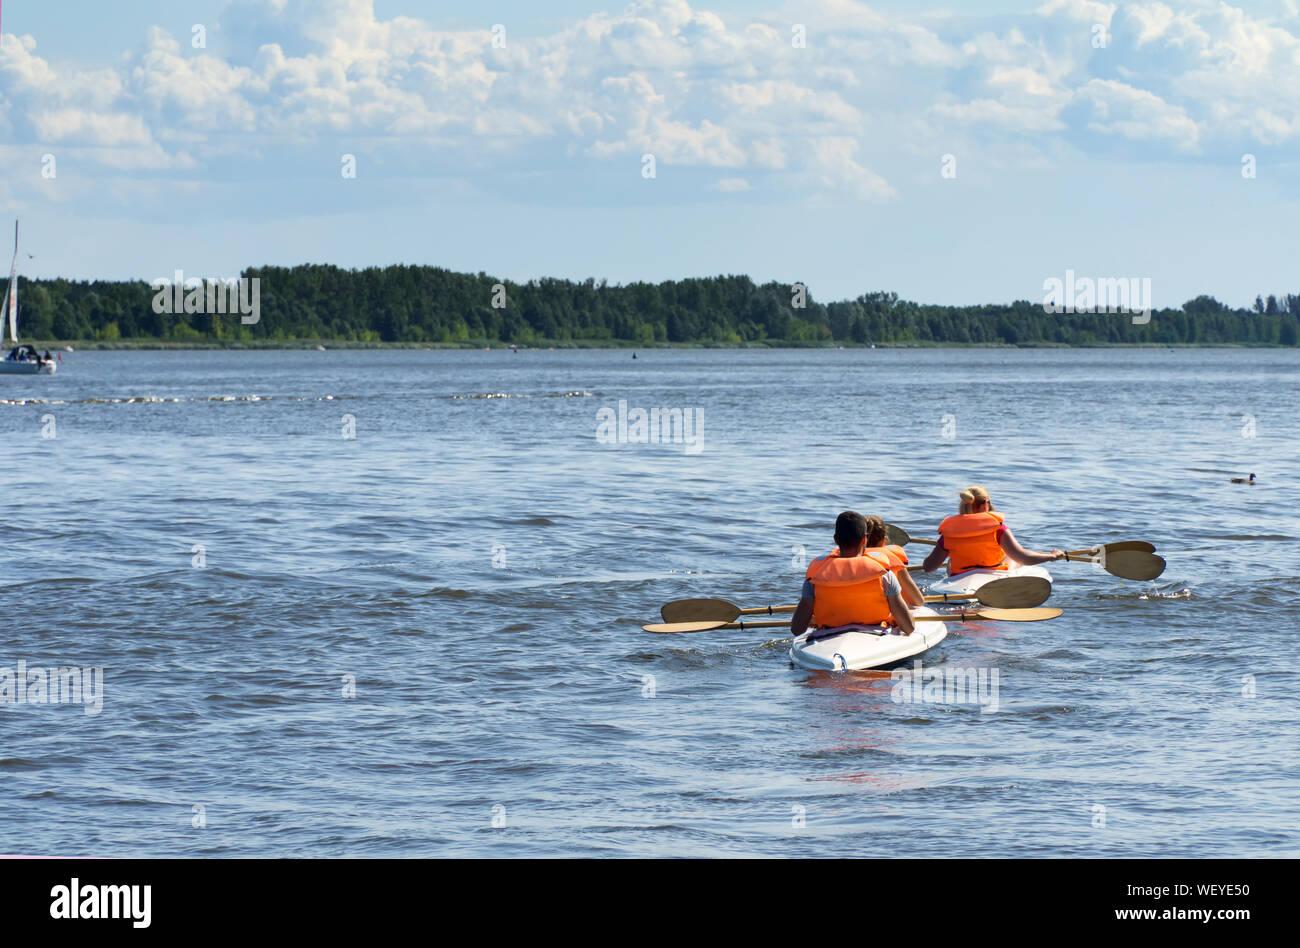 Deux kayaks sur le lac vue vers l'arrière. Les canoéistes vêtus de gilets orange. Banque D'Images